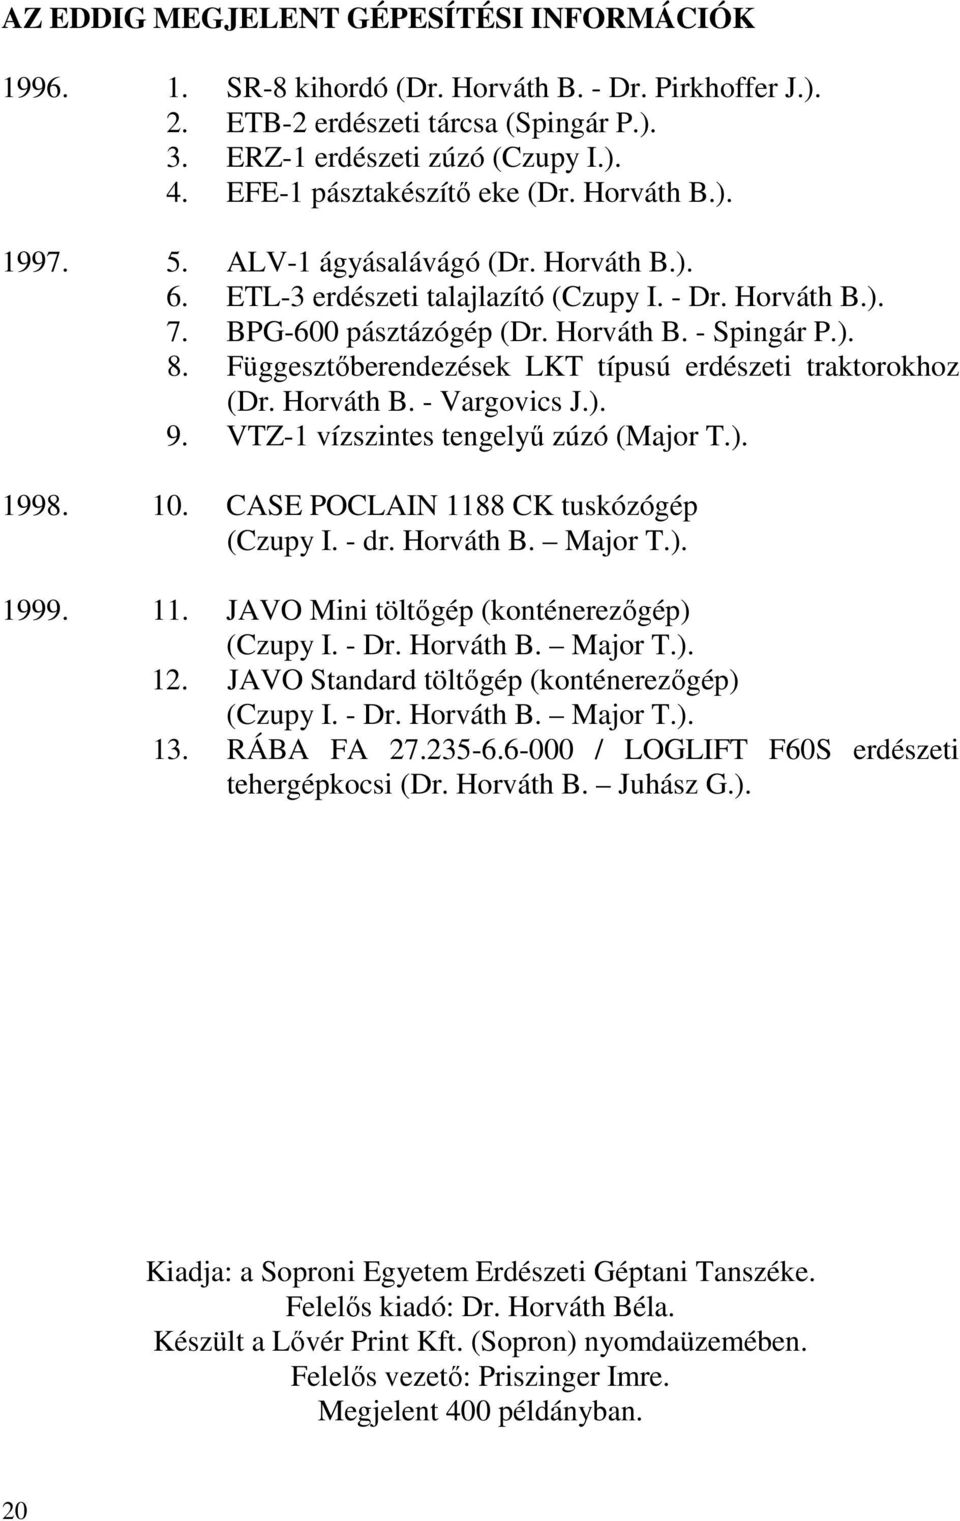 ). 8. Függesztőberendezések LKT típusú erdészeti traktorokhoz (Dr. Horváth B. - Vargovics J.). 9. VTZ-1 vízszintes tengelyű zúzó (Major T.). 1998. 10. CASE POCLAIN 1188 CK tuskózógép (Czupy I. - dr.